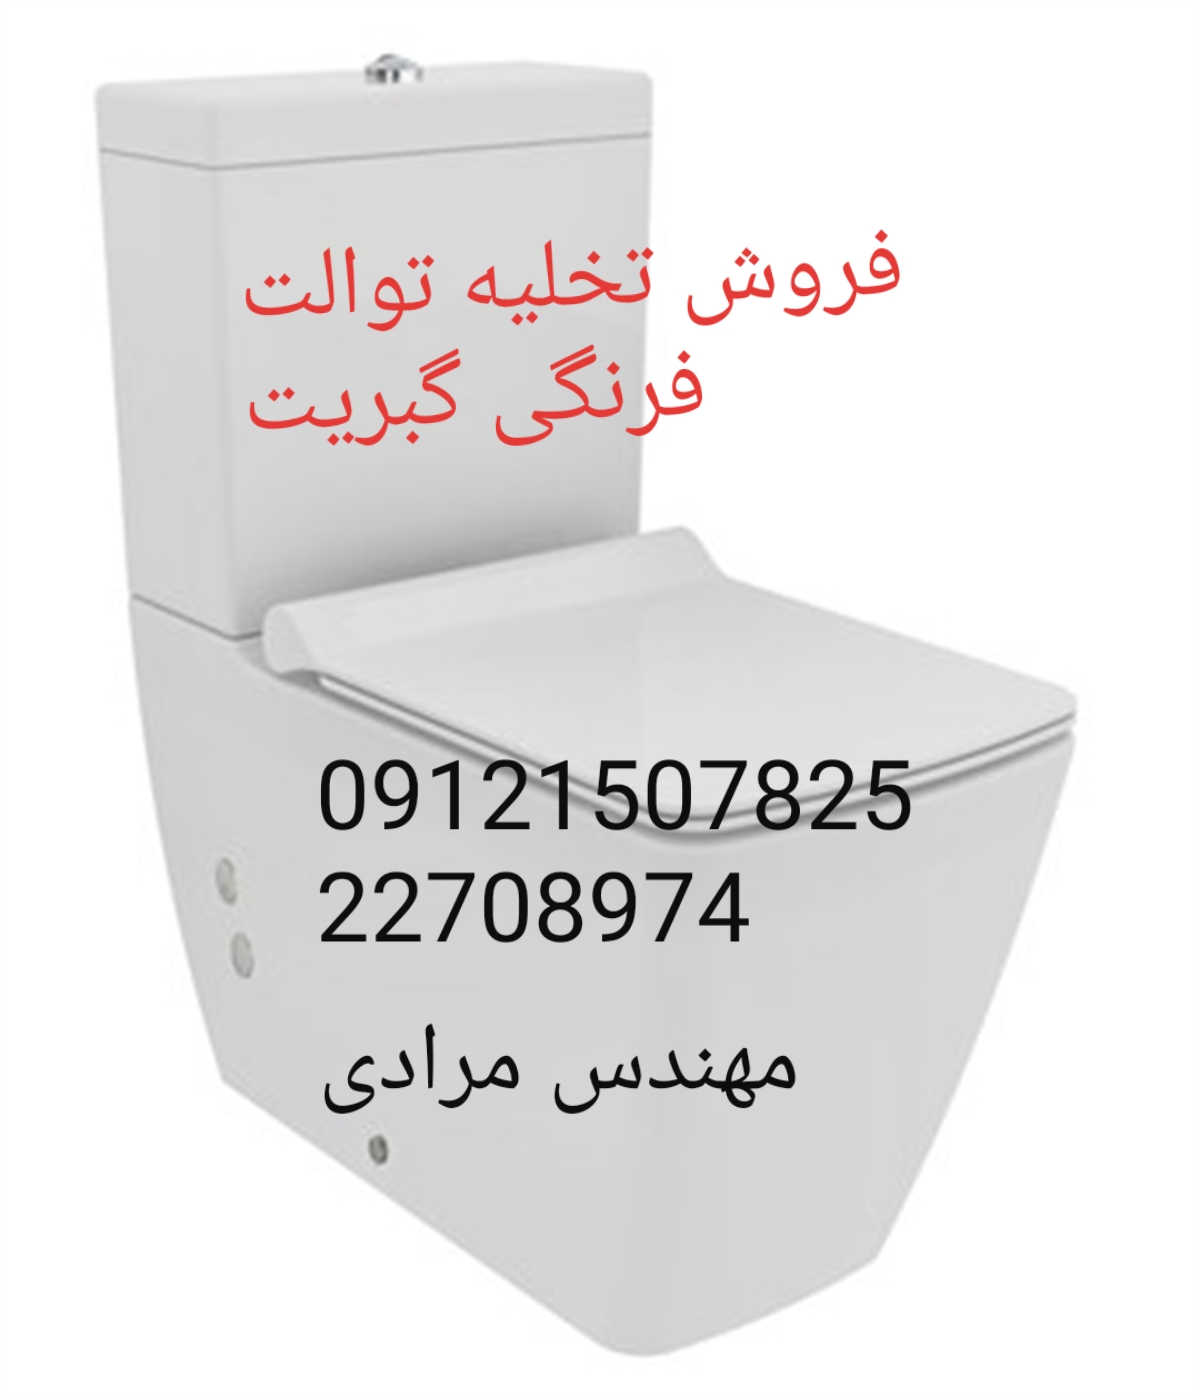 فروش_خدمات و تعمیر توالت فرنگی geberit گبریت 09121507825